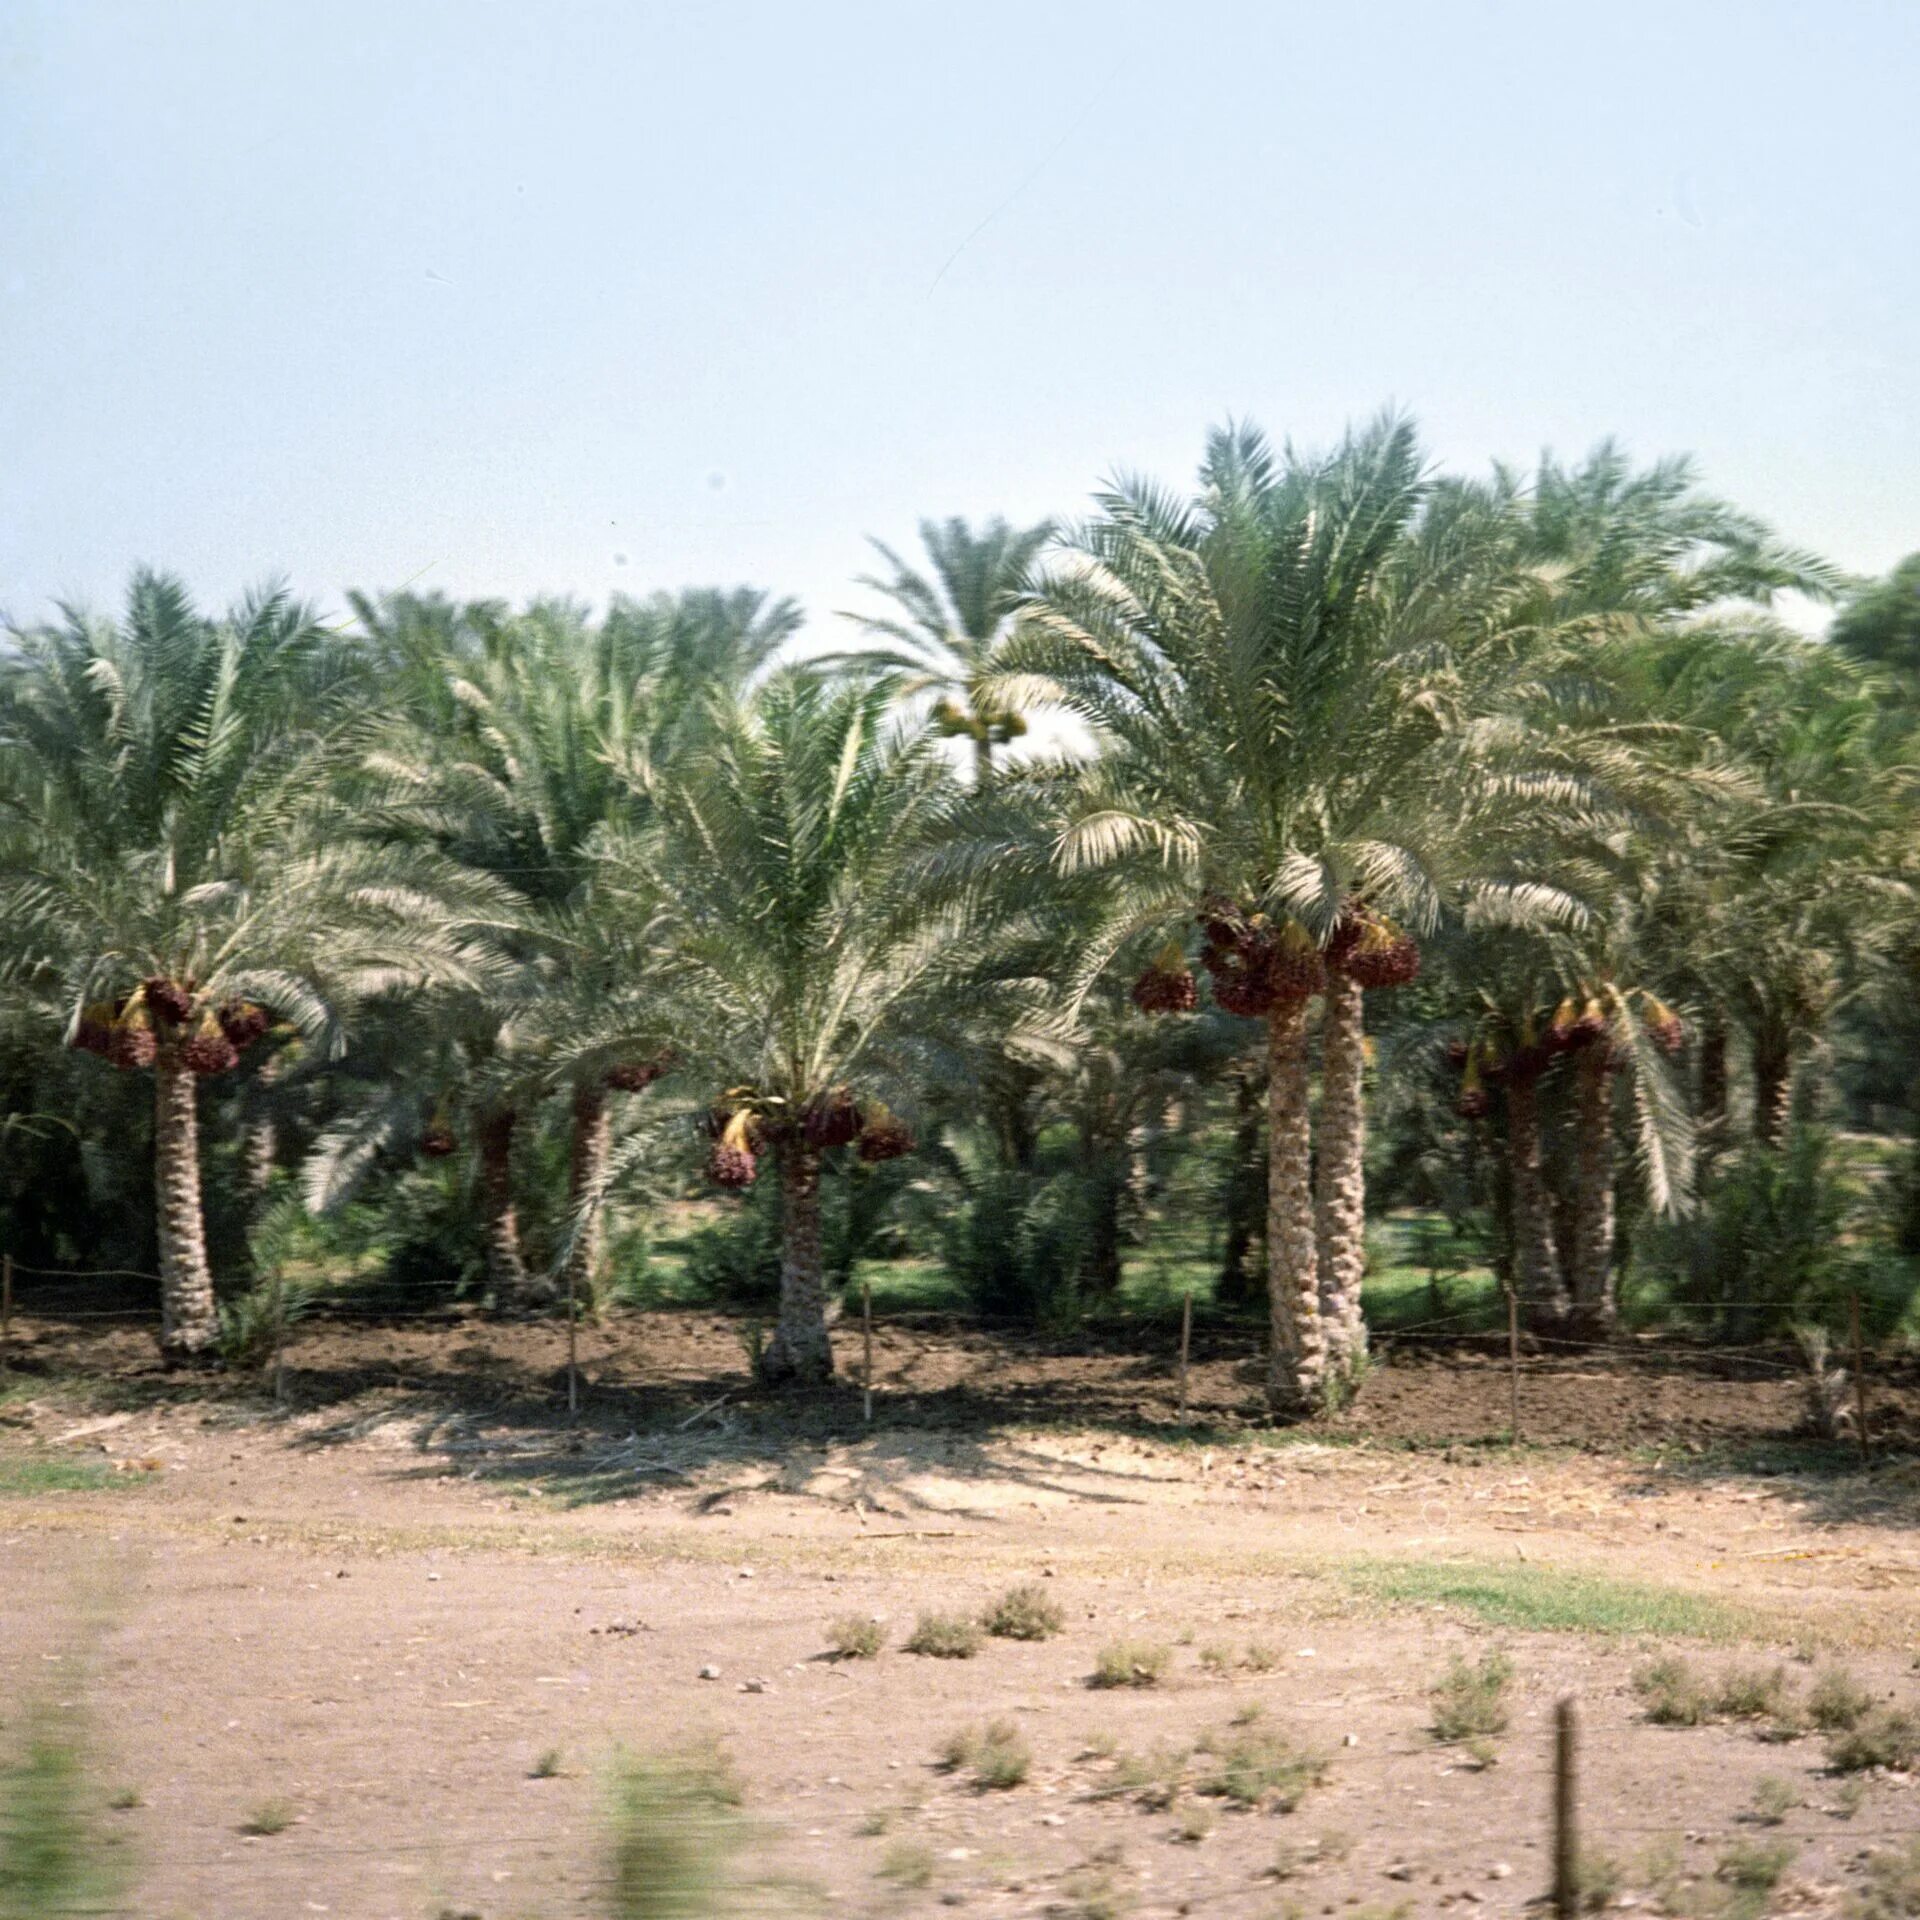 Финиковая плантация. Финиковая Пальма плантации. Финиковый сад в Саудовской Аравии. Аль-Айн - финиковая плантация. Финиковые пальмы плантации Саудовская Аравия.